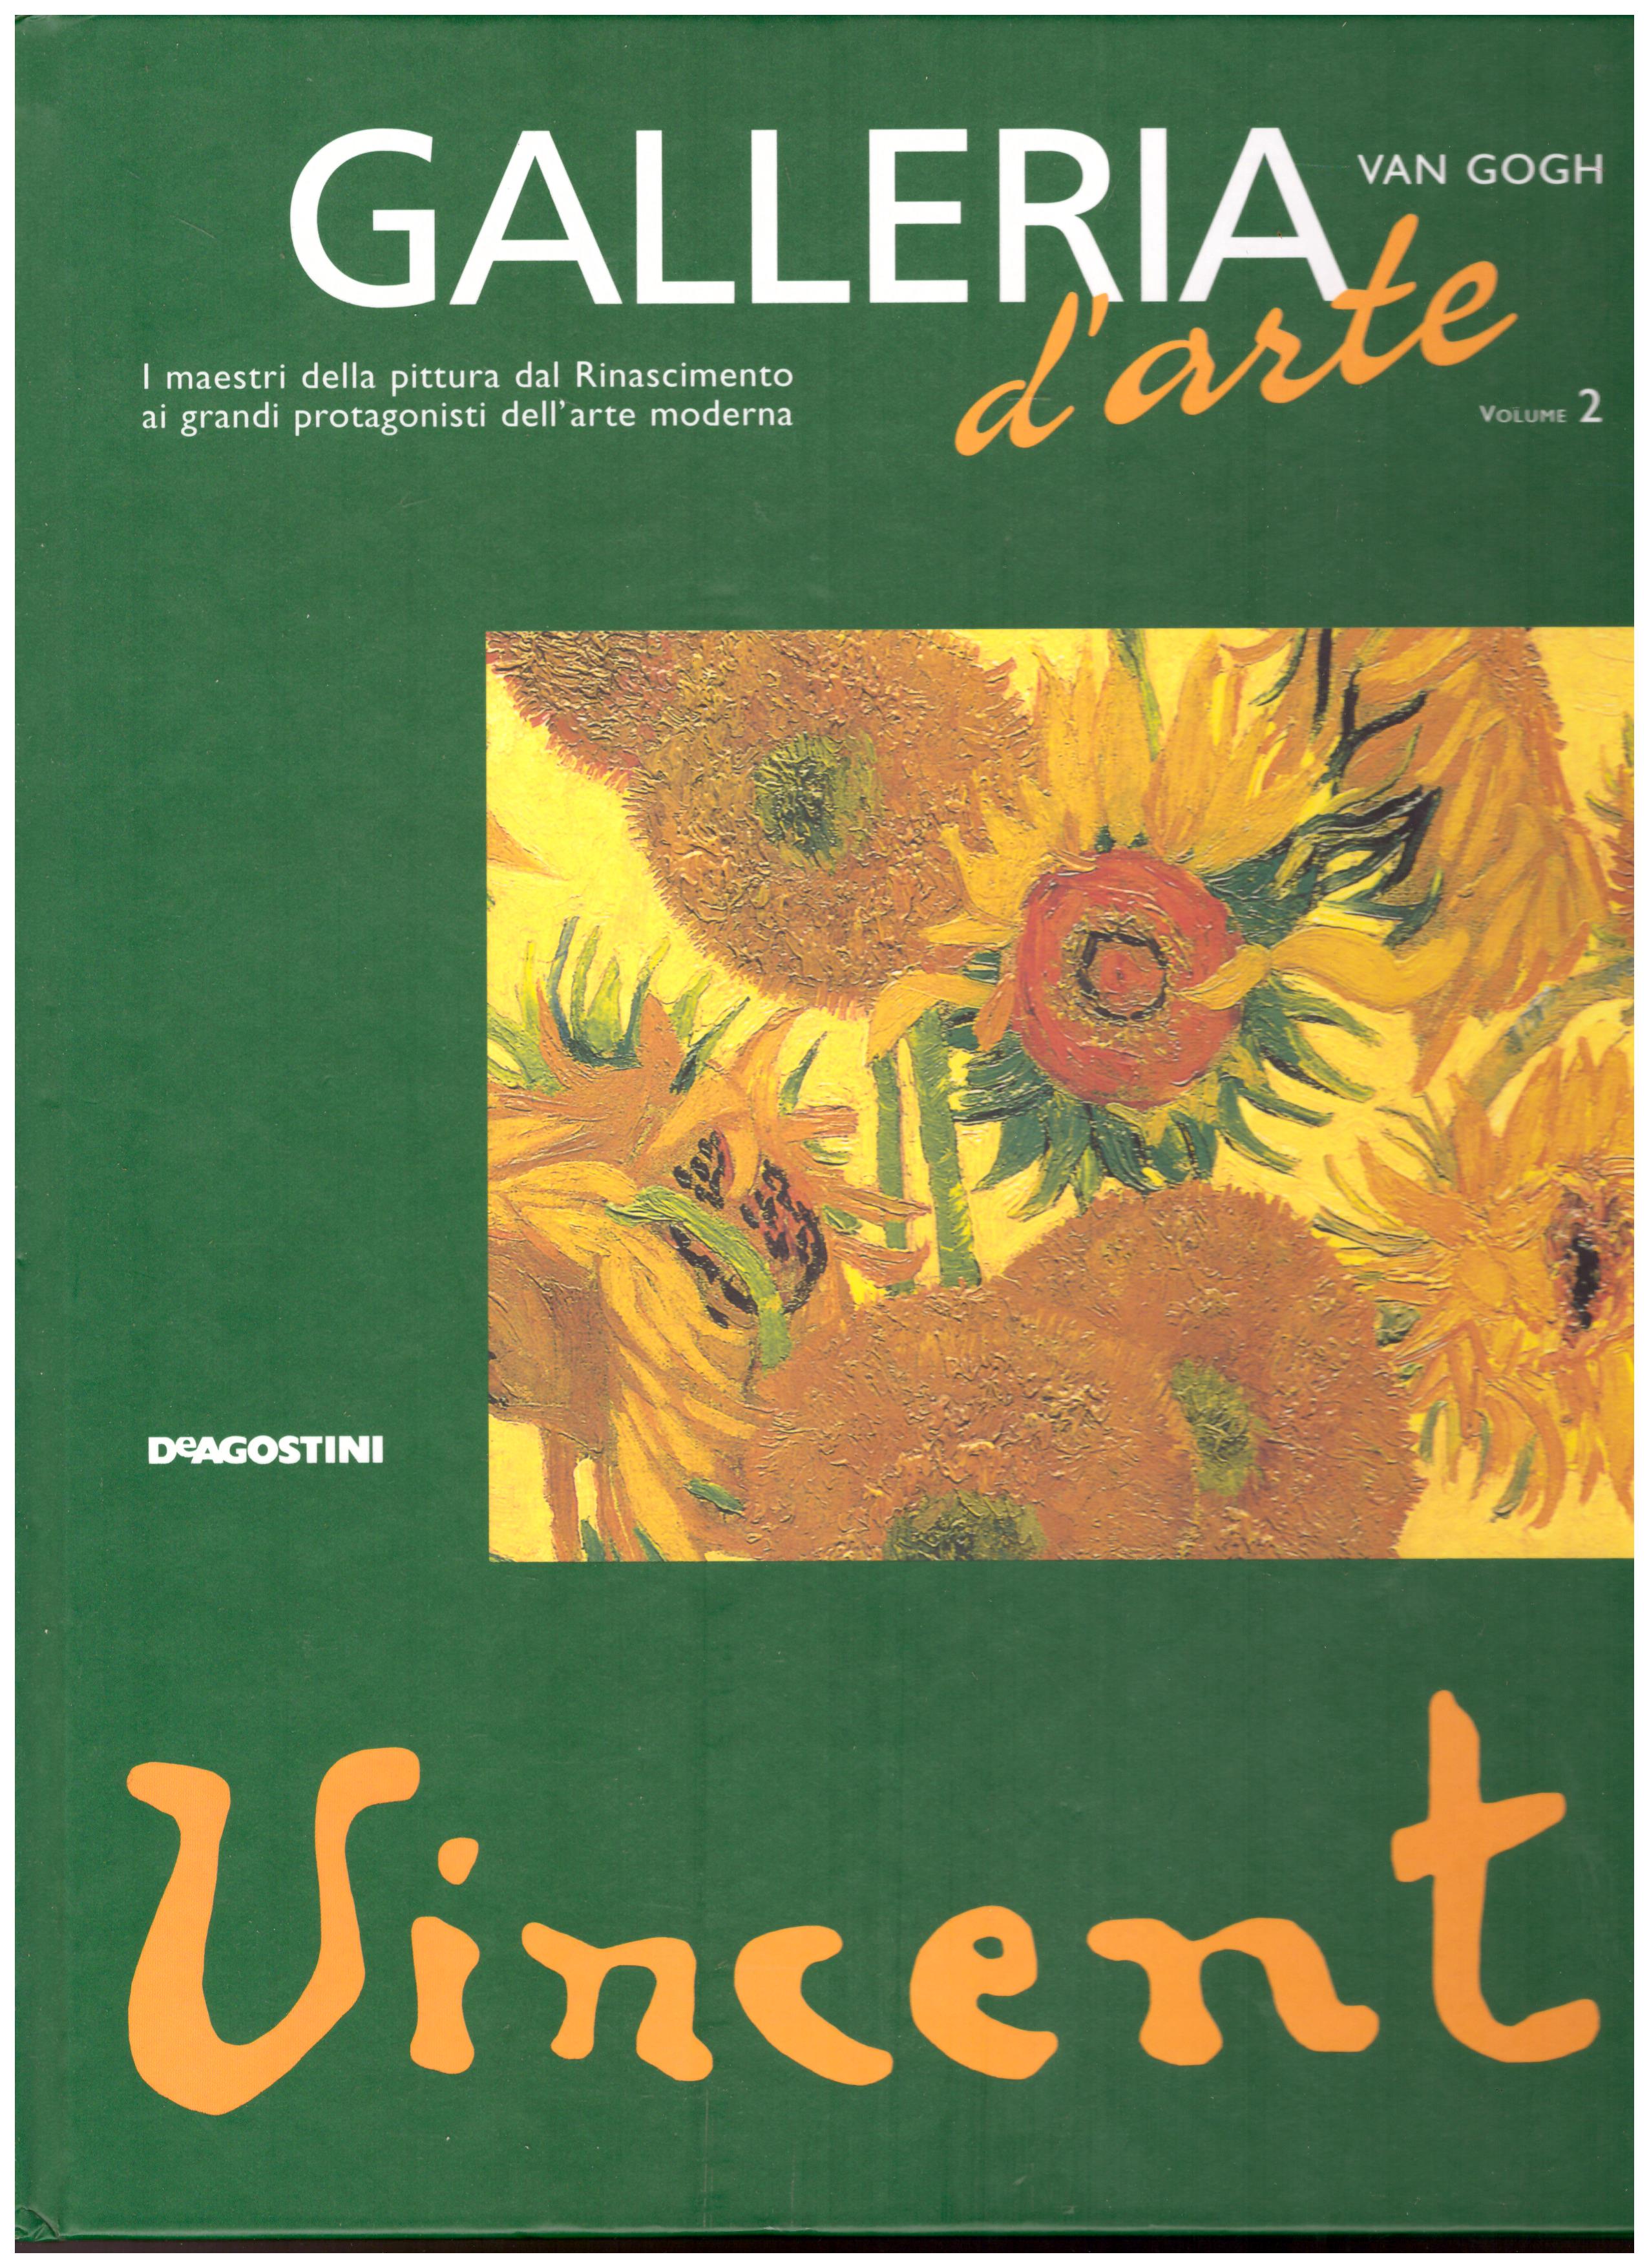 Titolo: Galleria d'arte, Van Gogh Autore: AA.VV.  Editore: DeAgostini, 2001